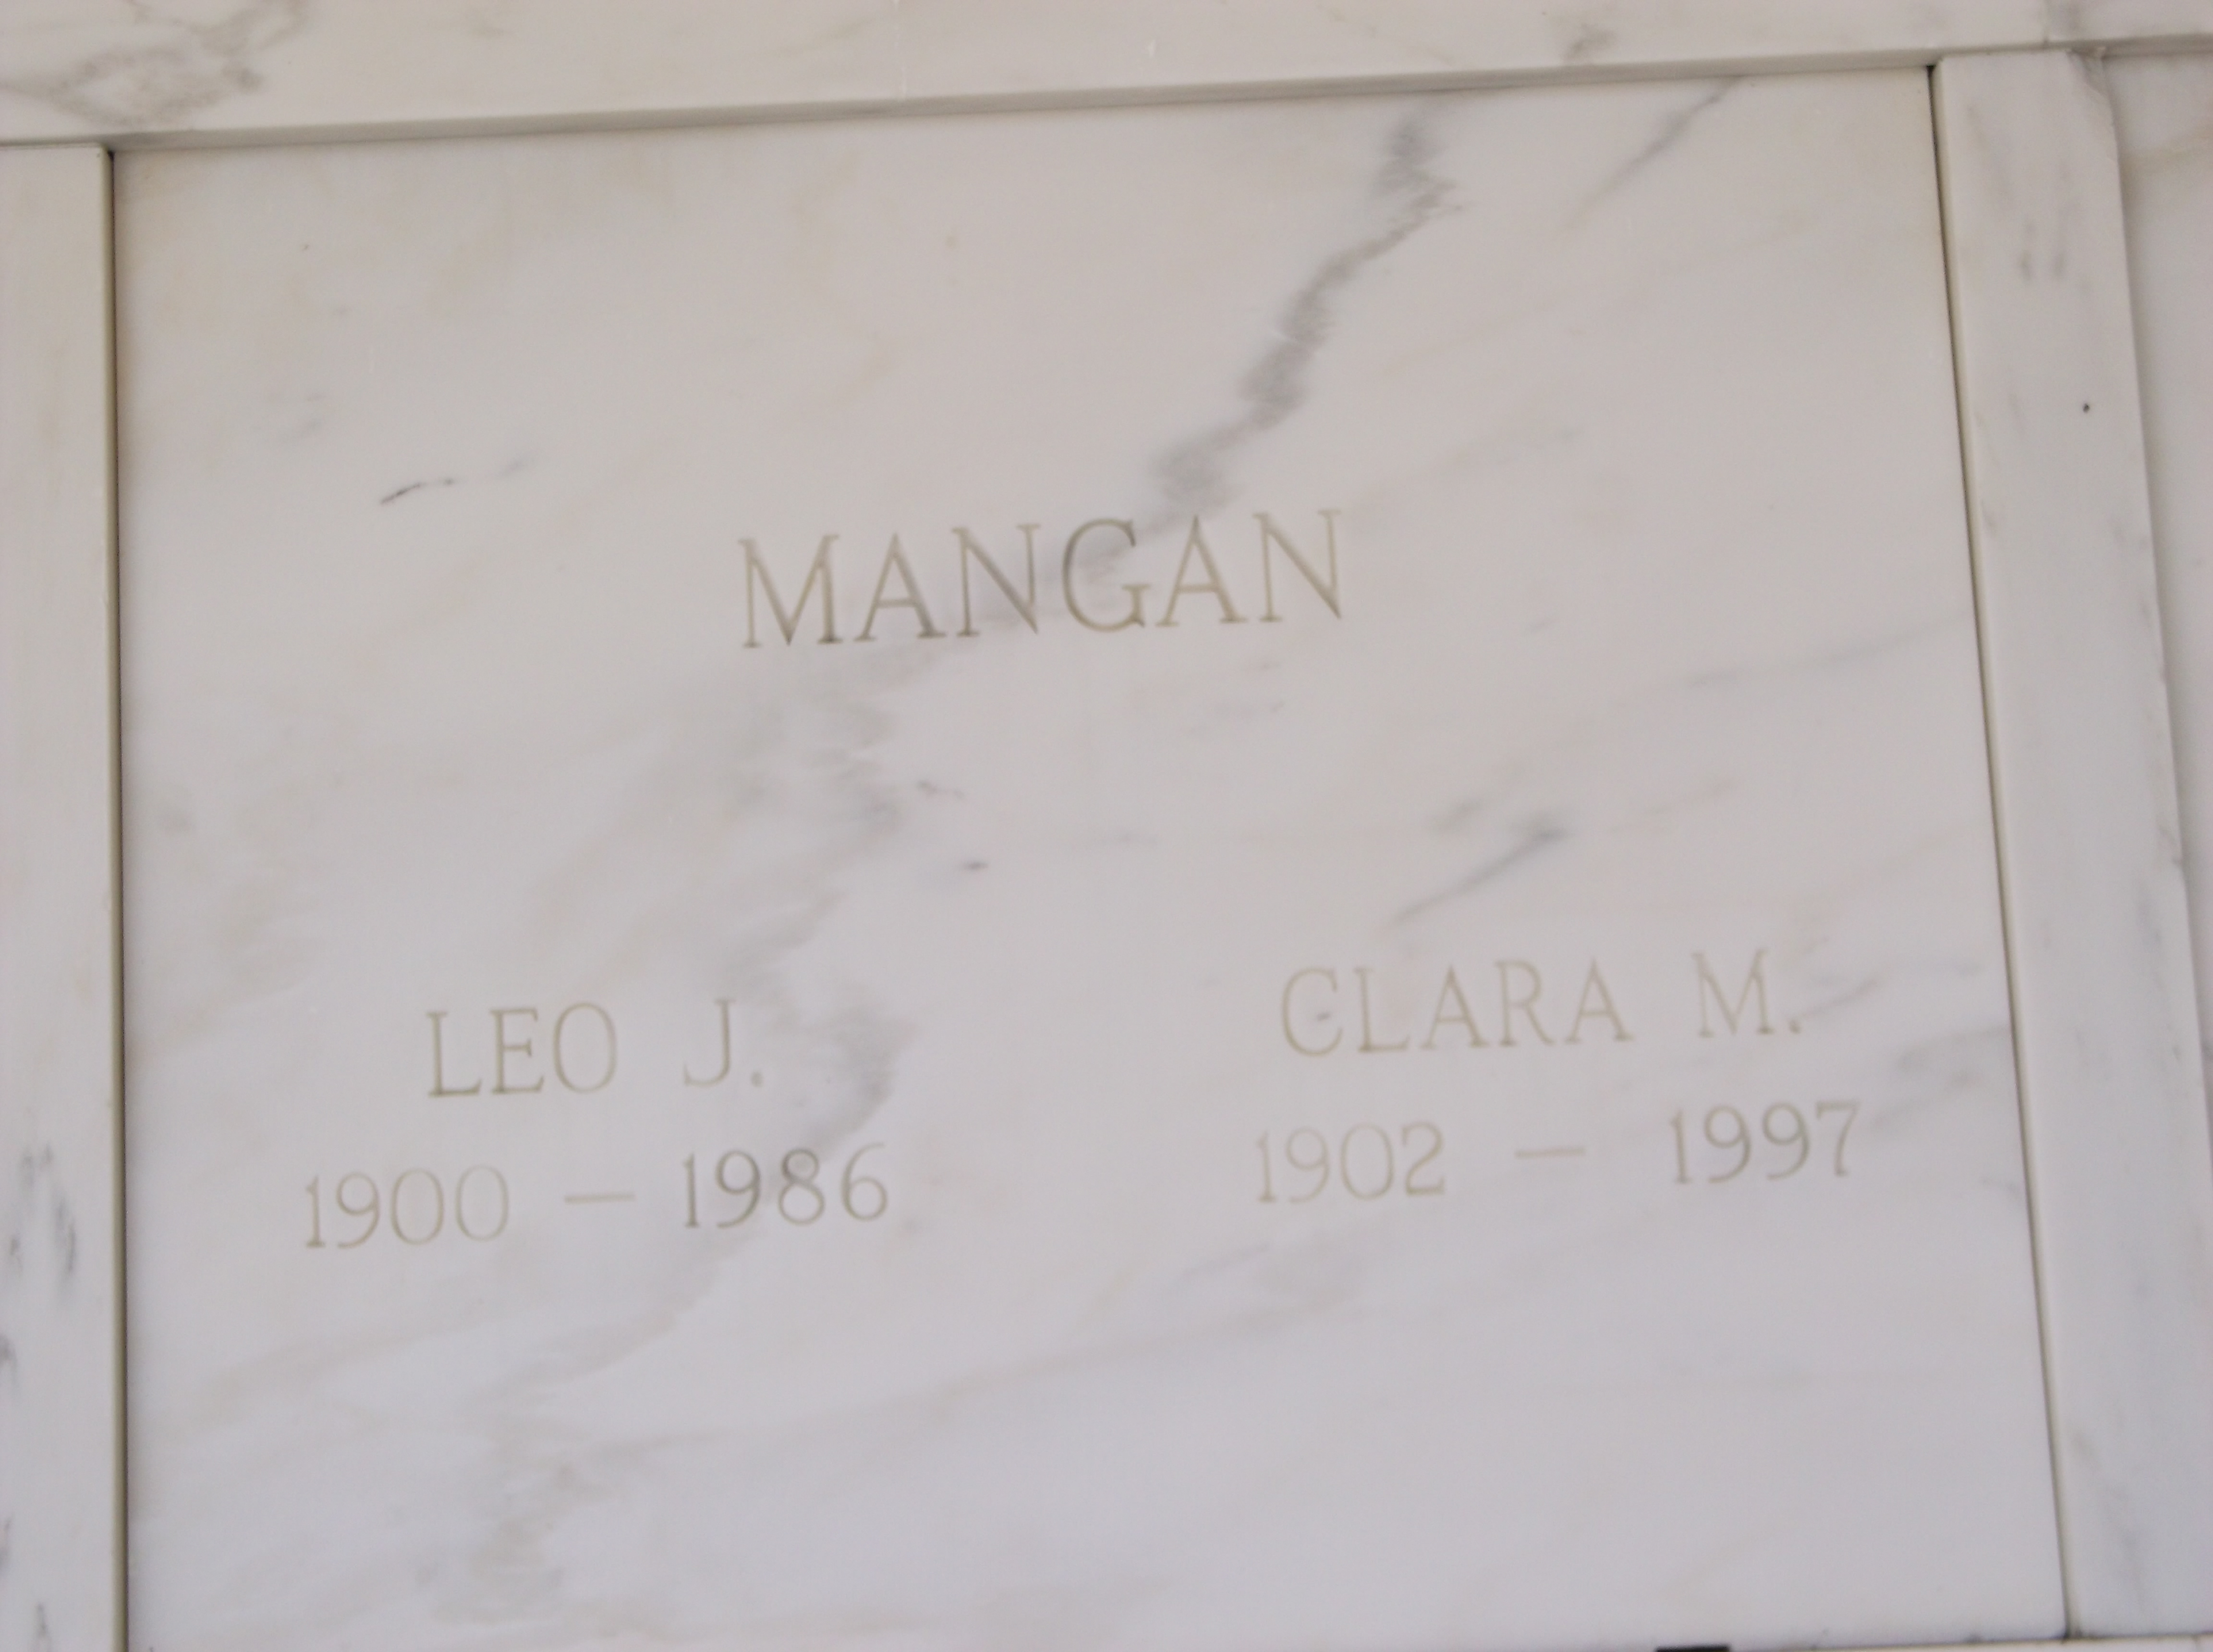 Leo J Mangan